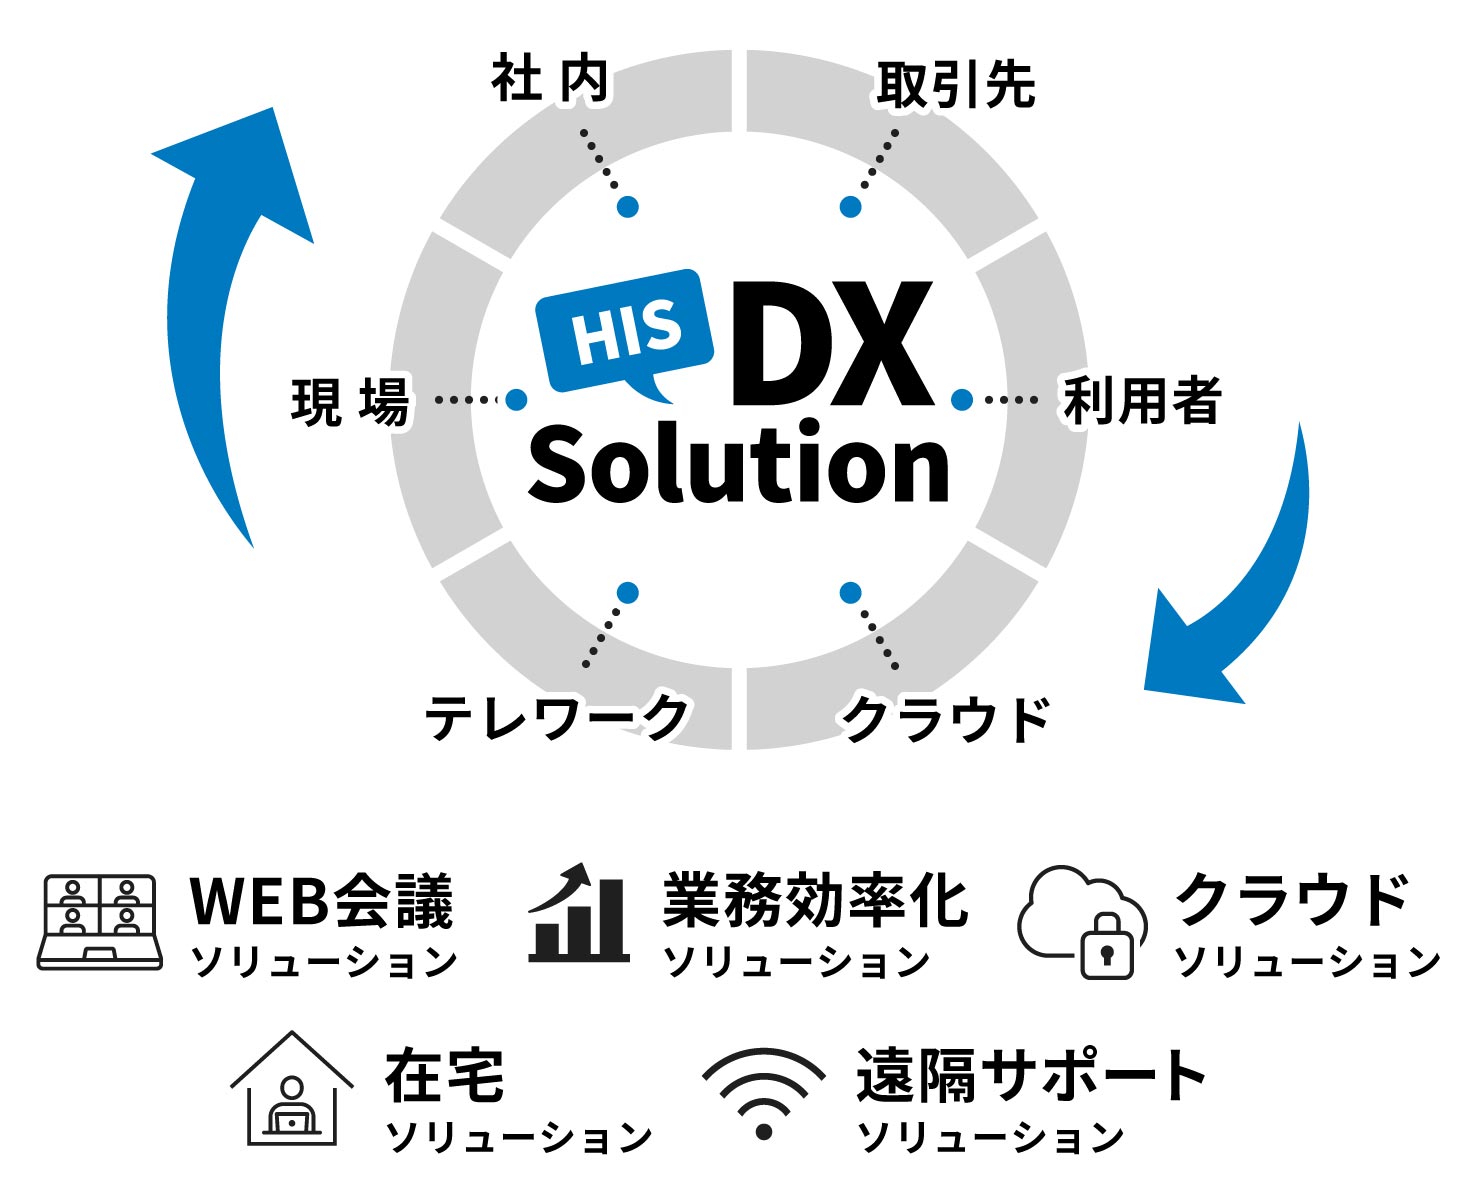 HIS DXソリューションイメージ：DXソリューション導入で社内・取引先・利用者・クラウド・テレワーク・現場のどこにいても繋がることができます。